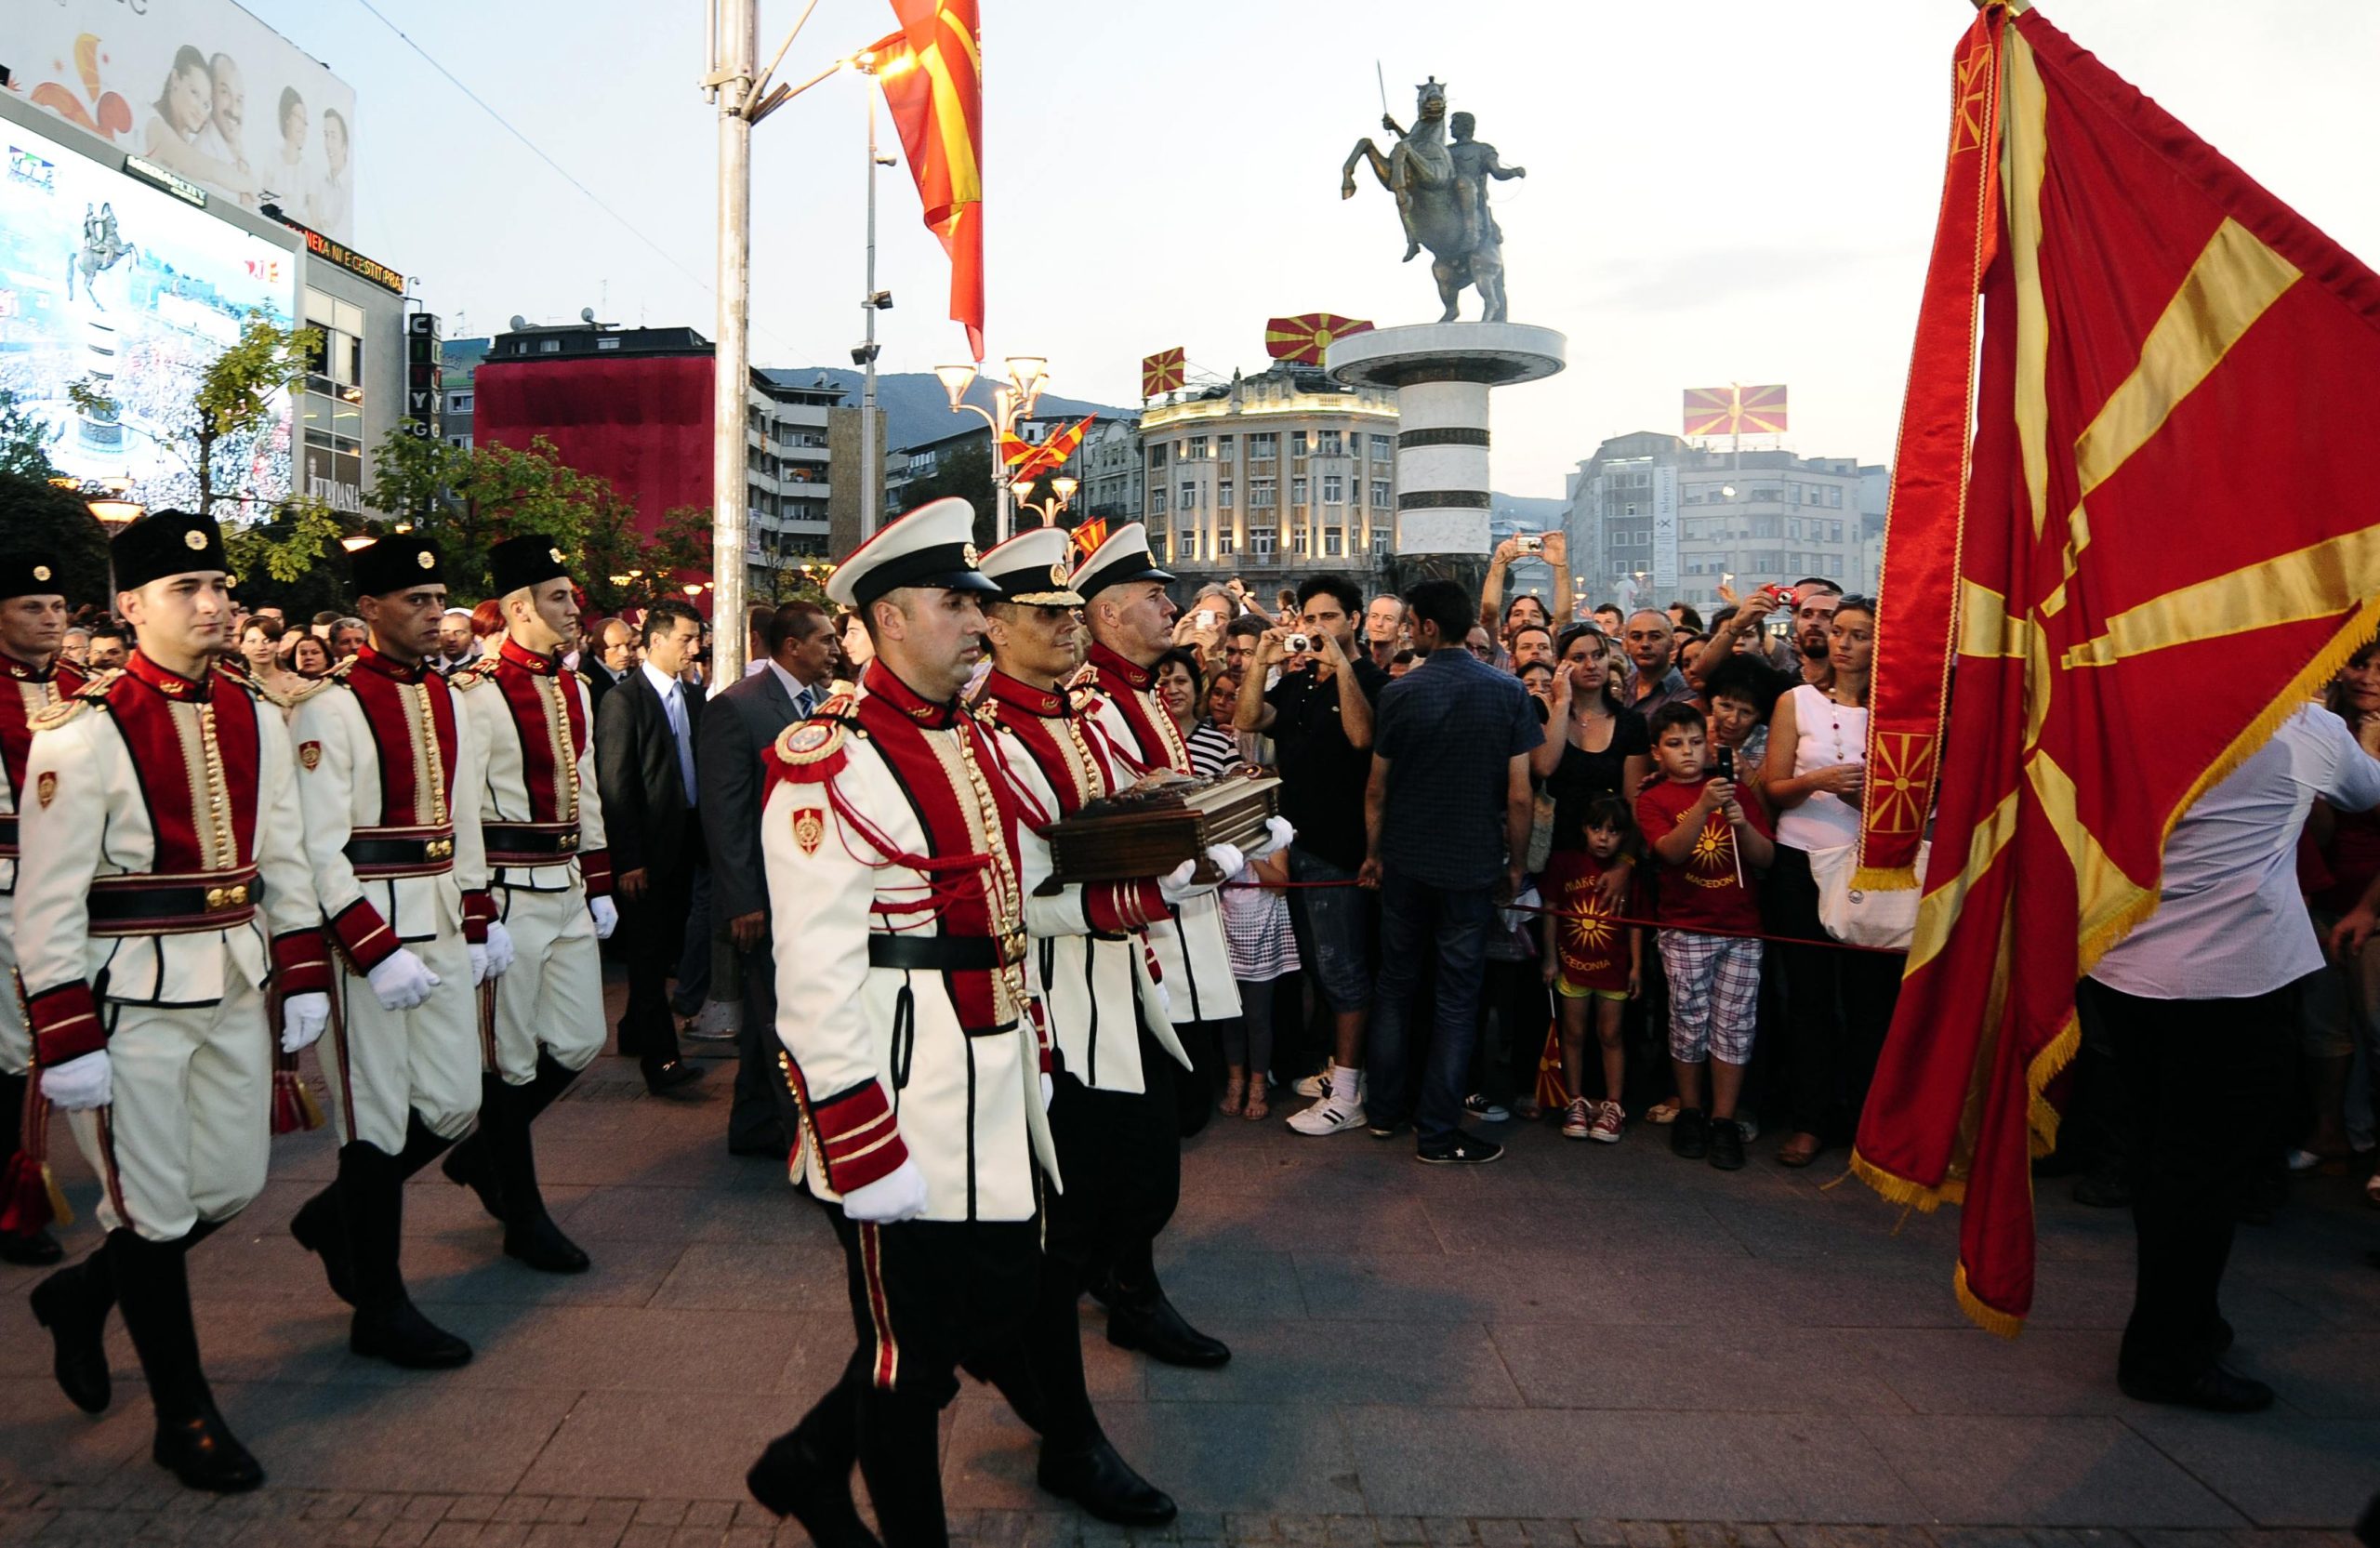 Οι Αλβανοί λένε ότι συμφωνήθηκε το όνομα «Νέα Μακεδονία» – Εθνικότητα «νεομακεδονική» και γλώσσα «σλαβομακεδονική»